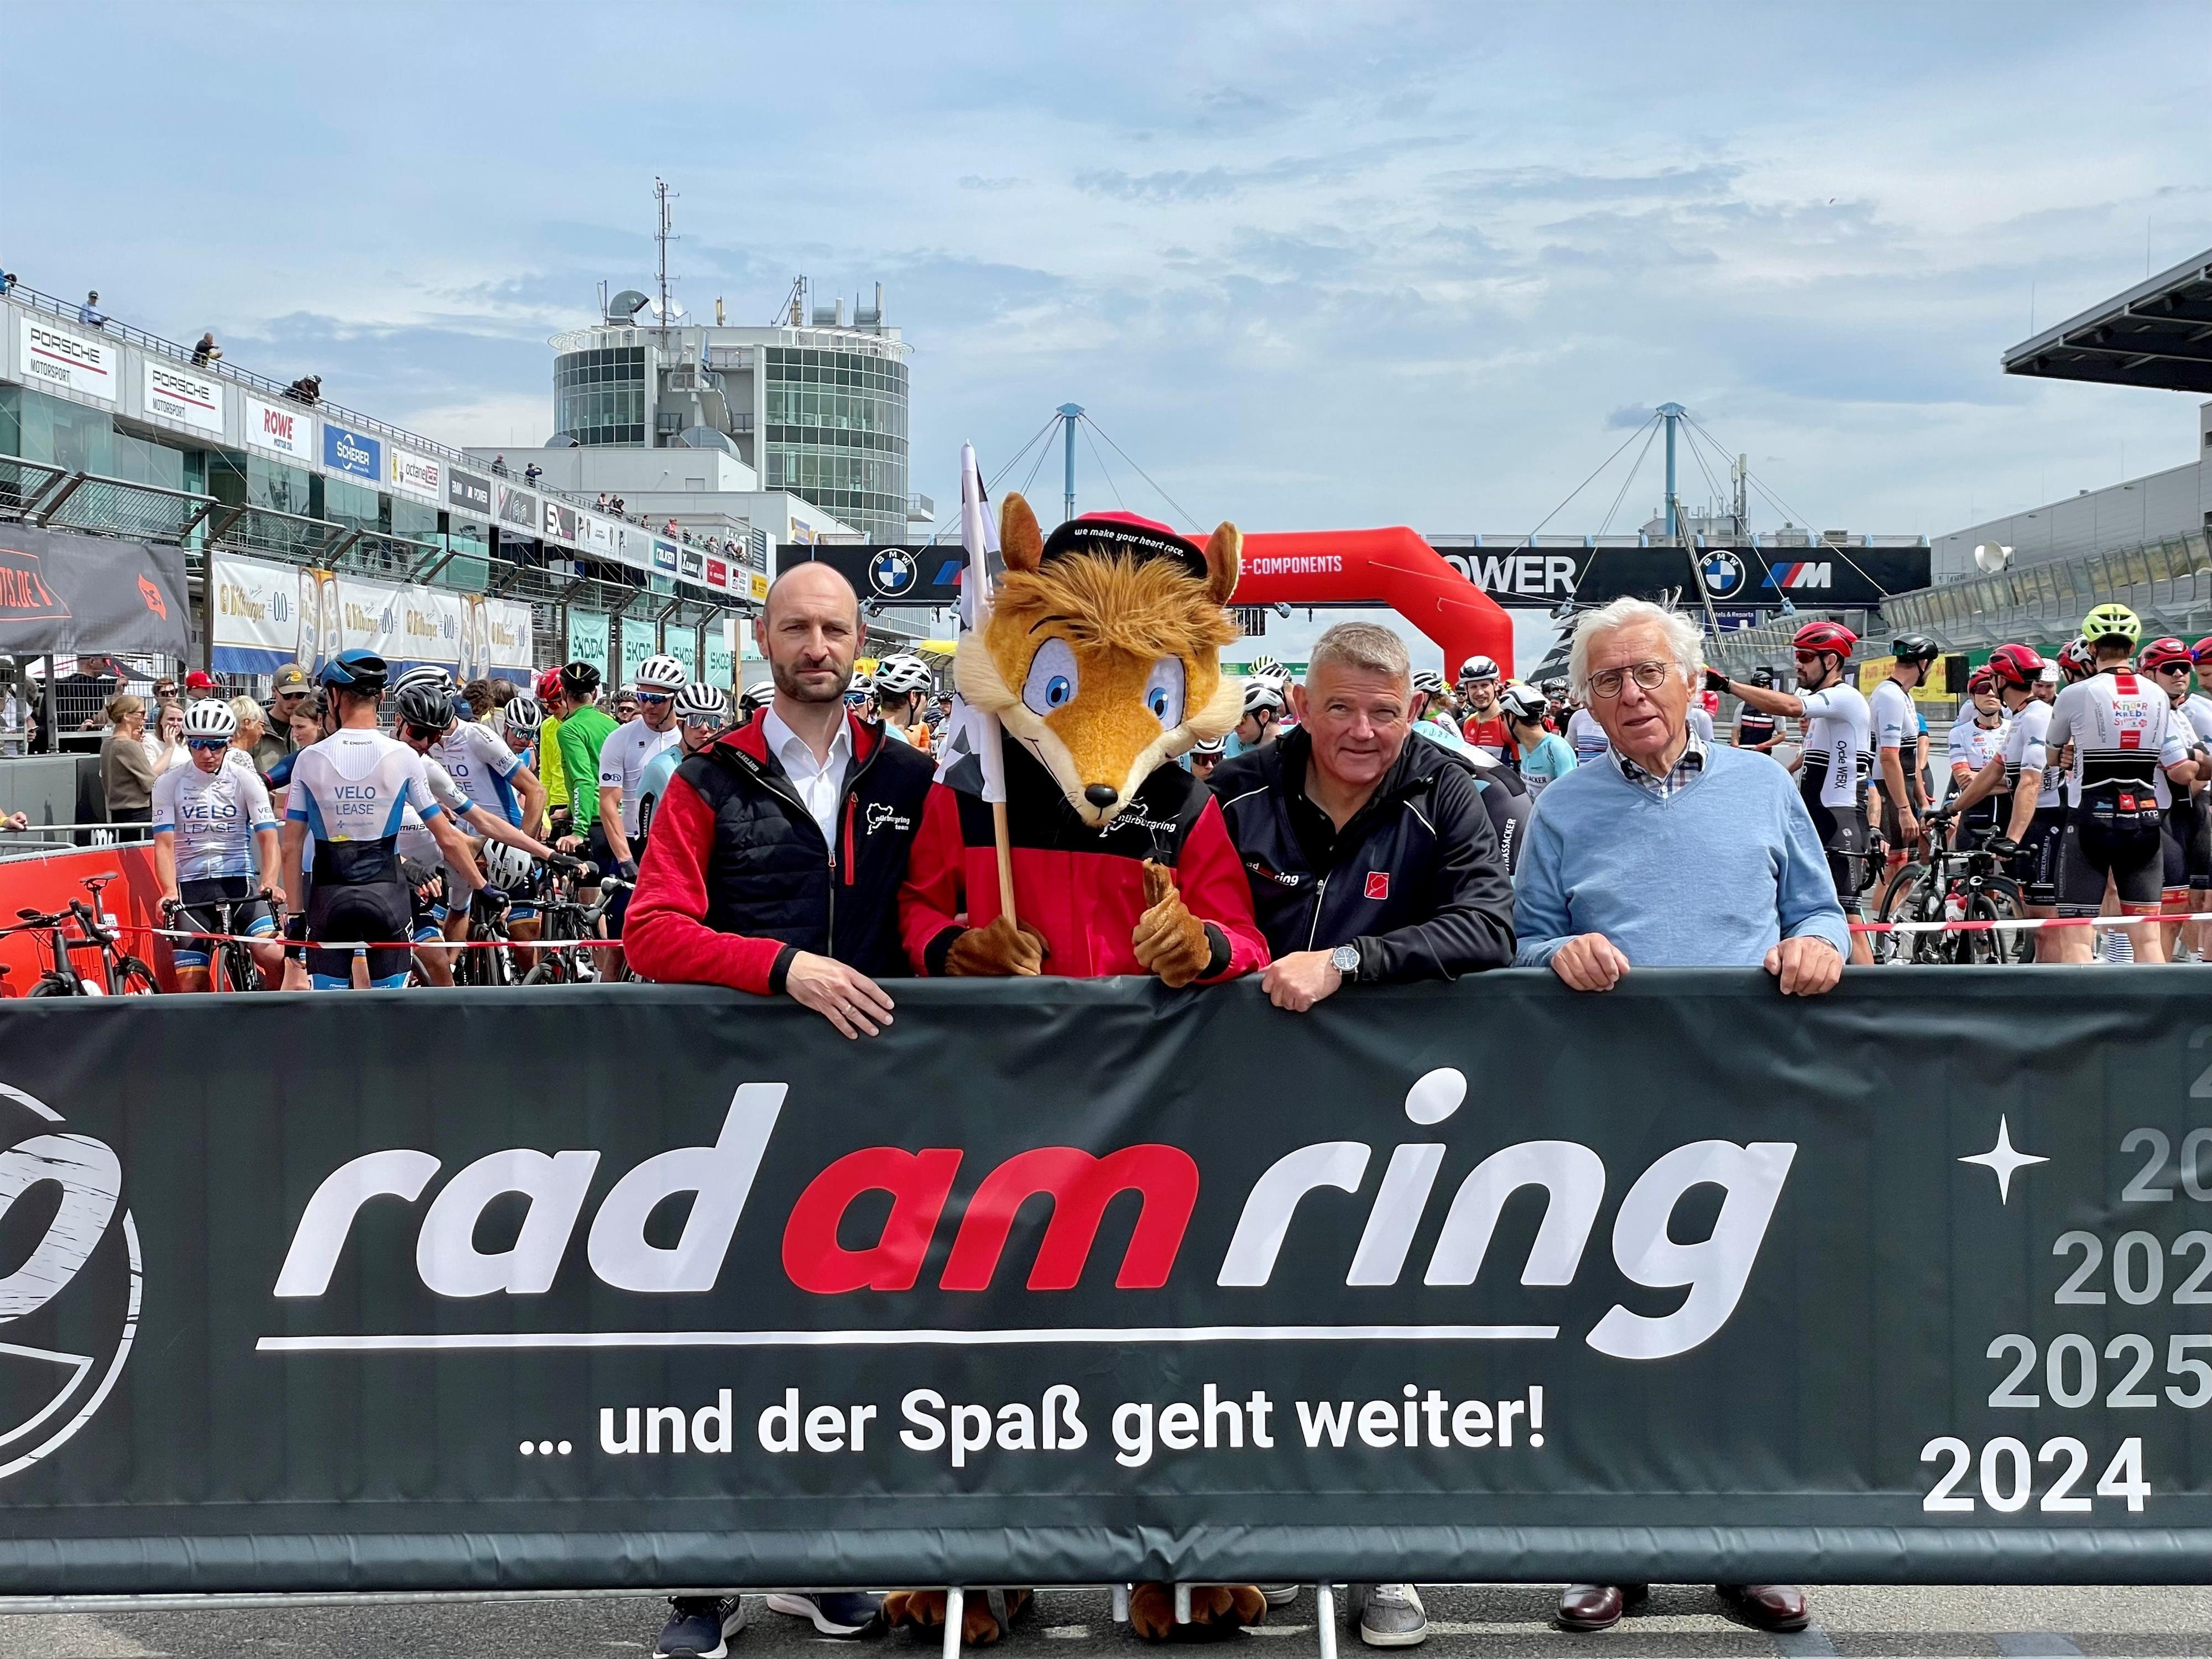 Rad am Ring und der Spaß geht weiter, @ Pressefoto©Nürburgring